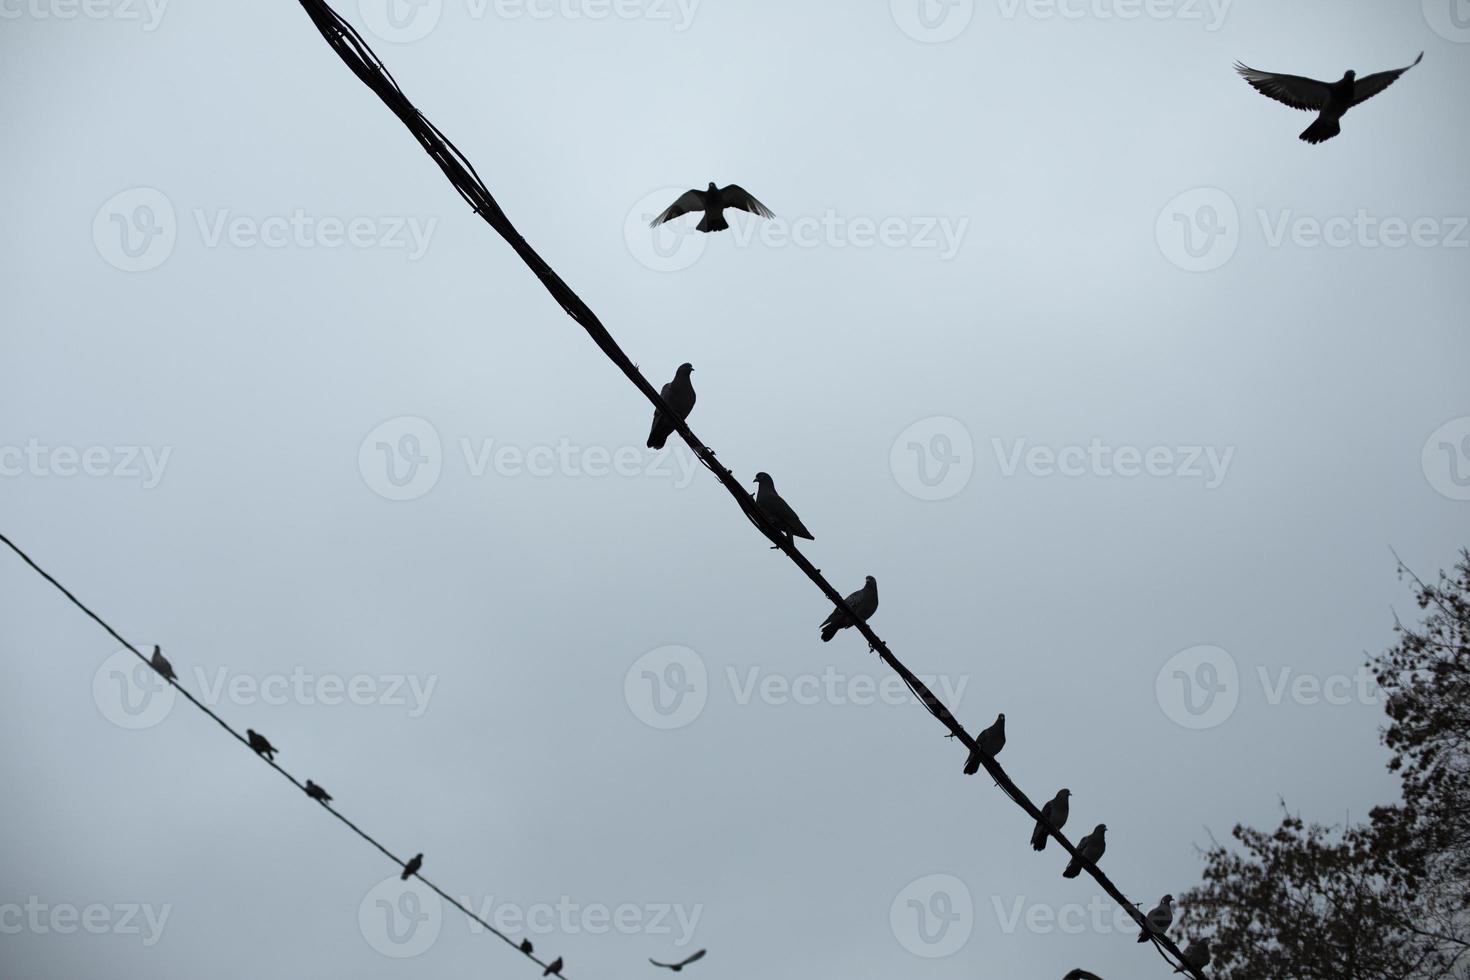 les pigeons sont assis sur le fil. silhouettes d'oiseaux sur fil électrique. détails de la vie des oiseaux urbains. photo